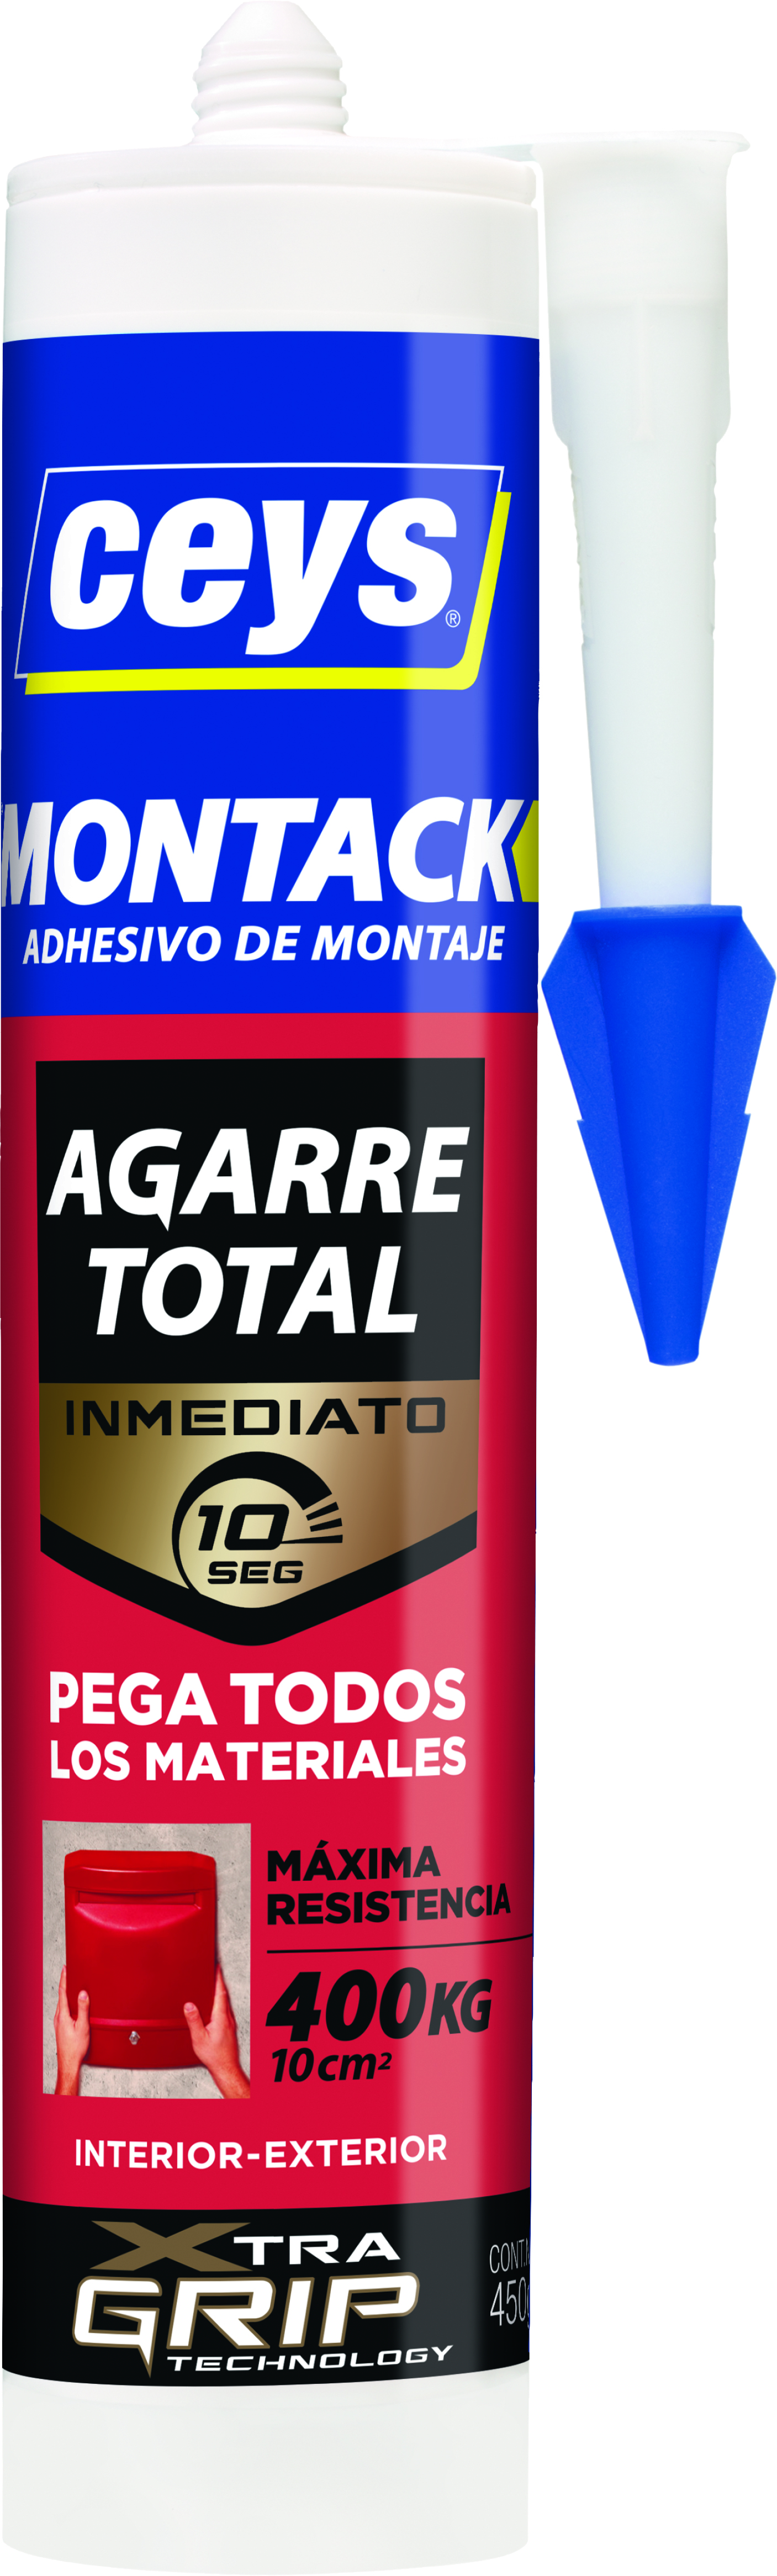 Ceys Montack Adhesivo De Montaje Agarre Total - Pega Todos Los Materiales -  Transparente De 315 Gram - Guanxe Atlantic Marketpla